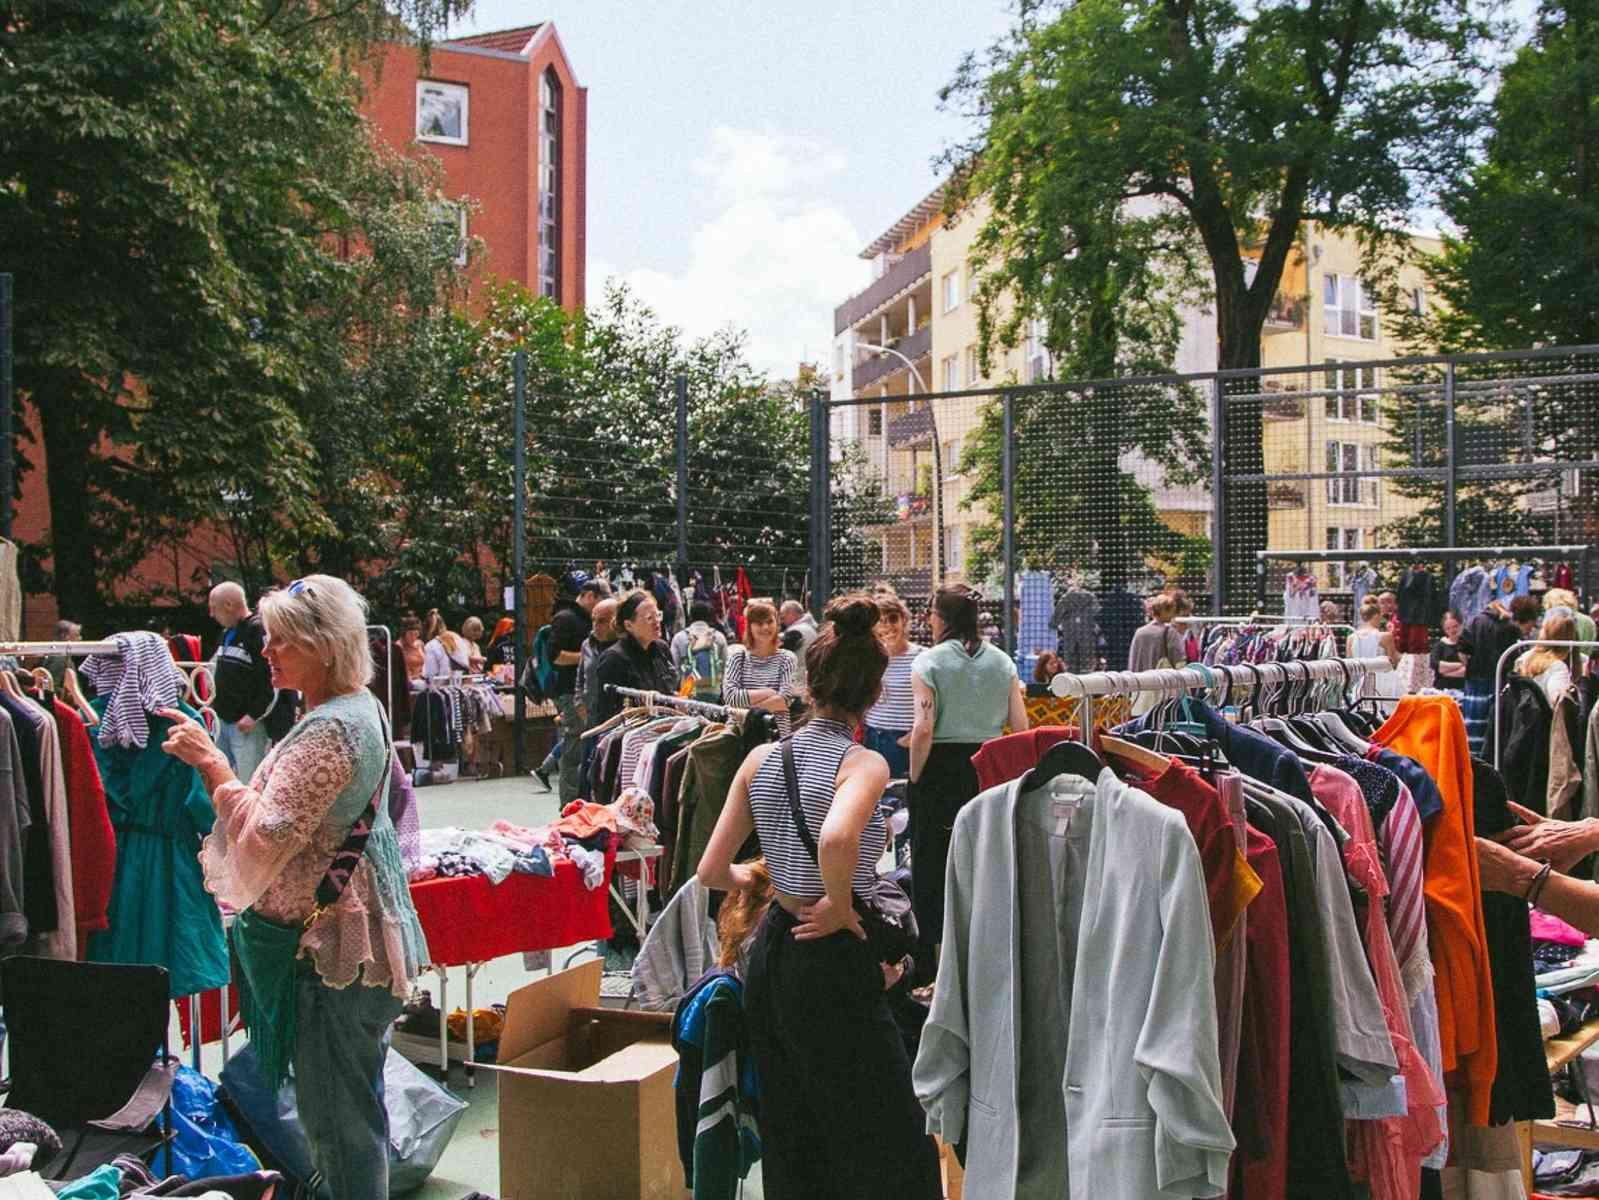 Personen bei Kleiderstangen auf einem Flohmarkt